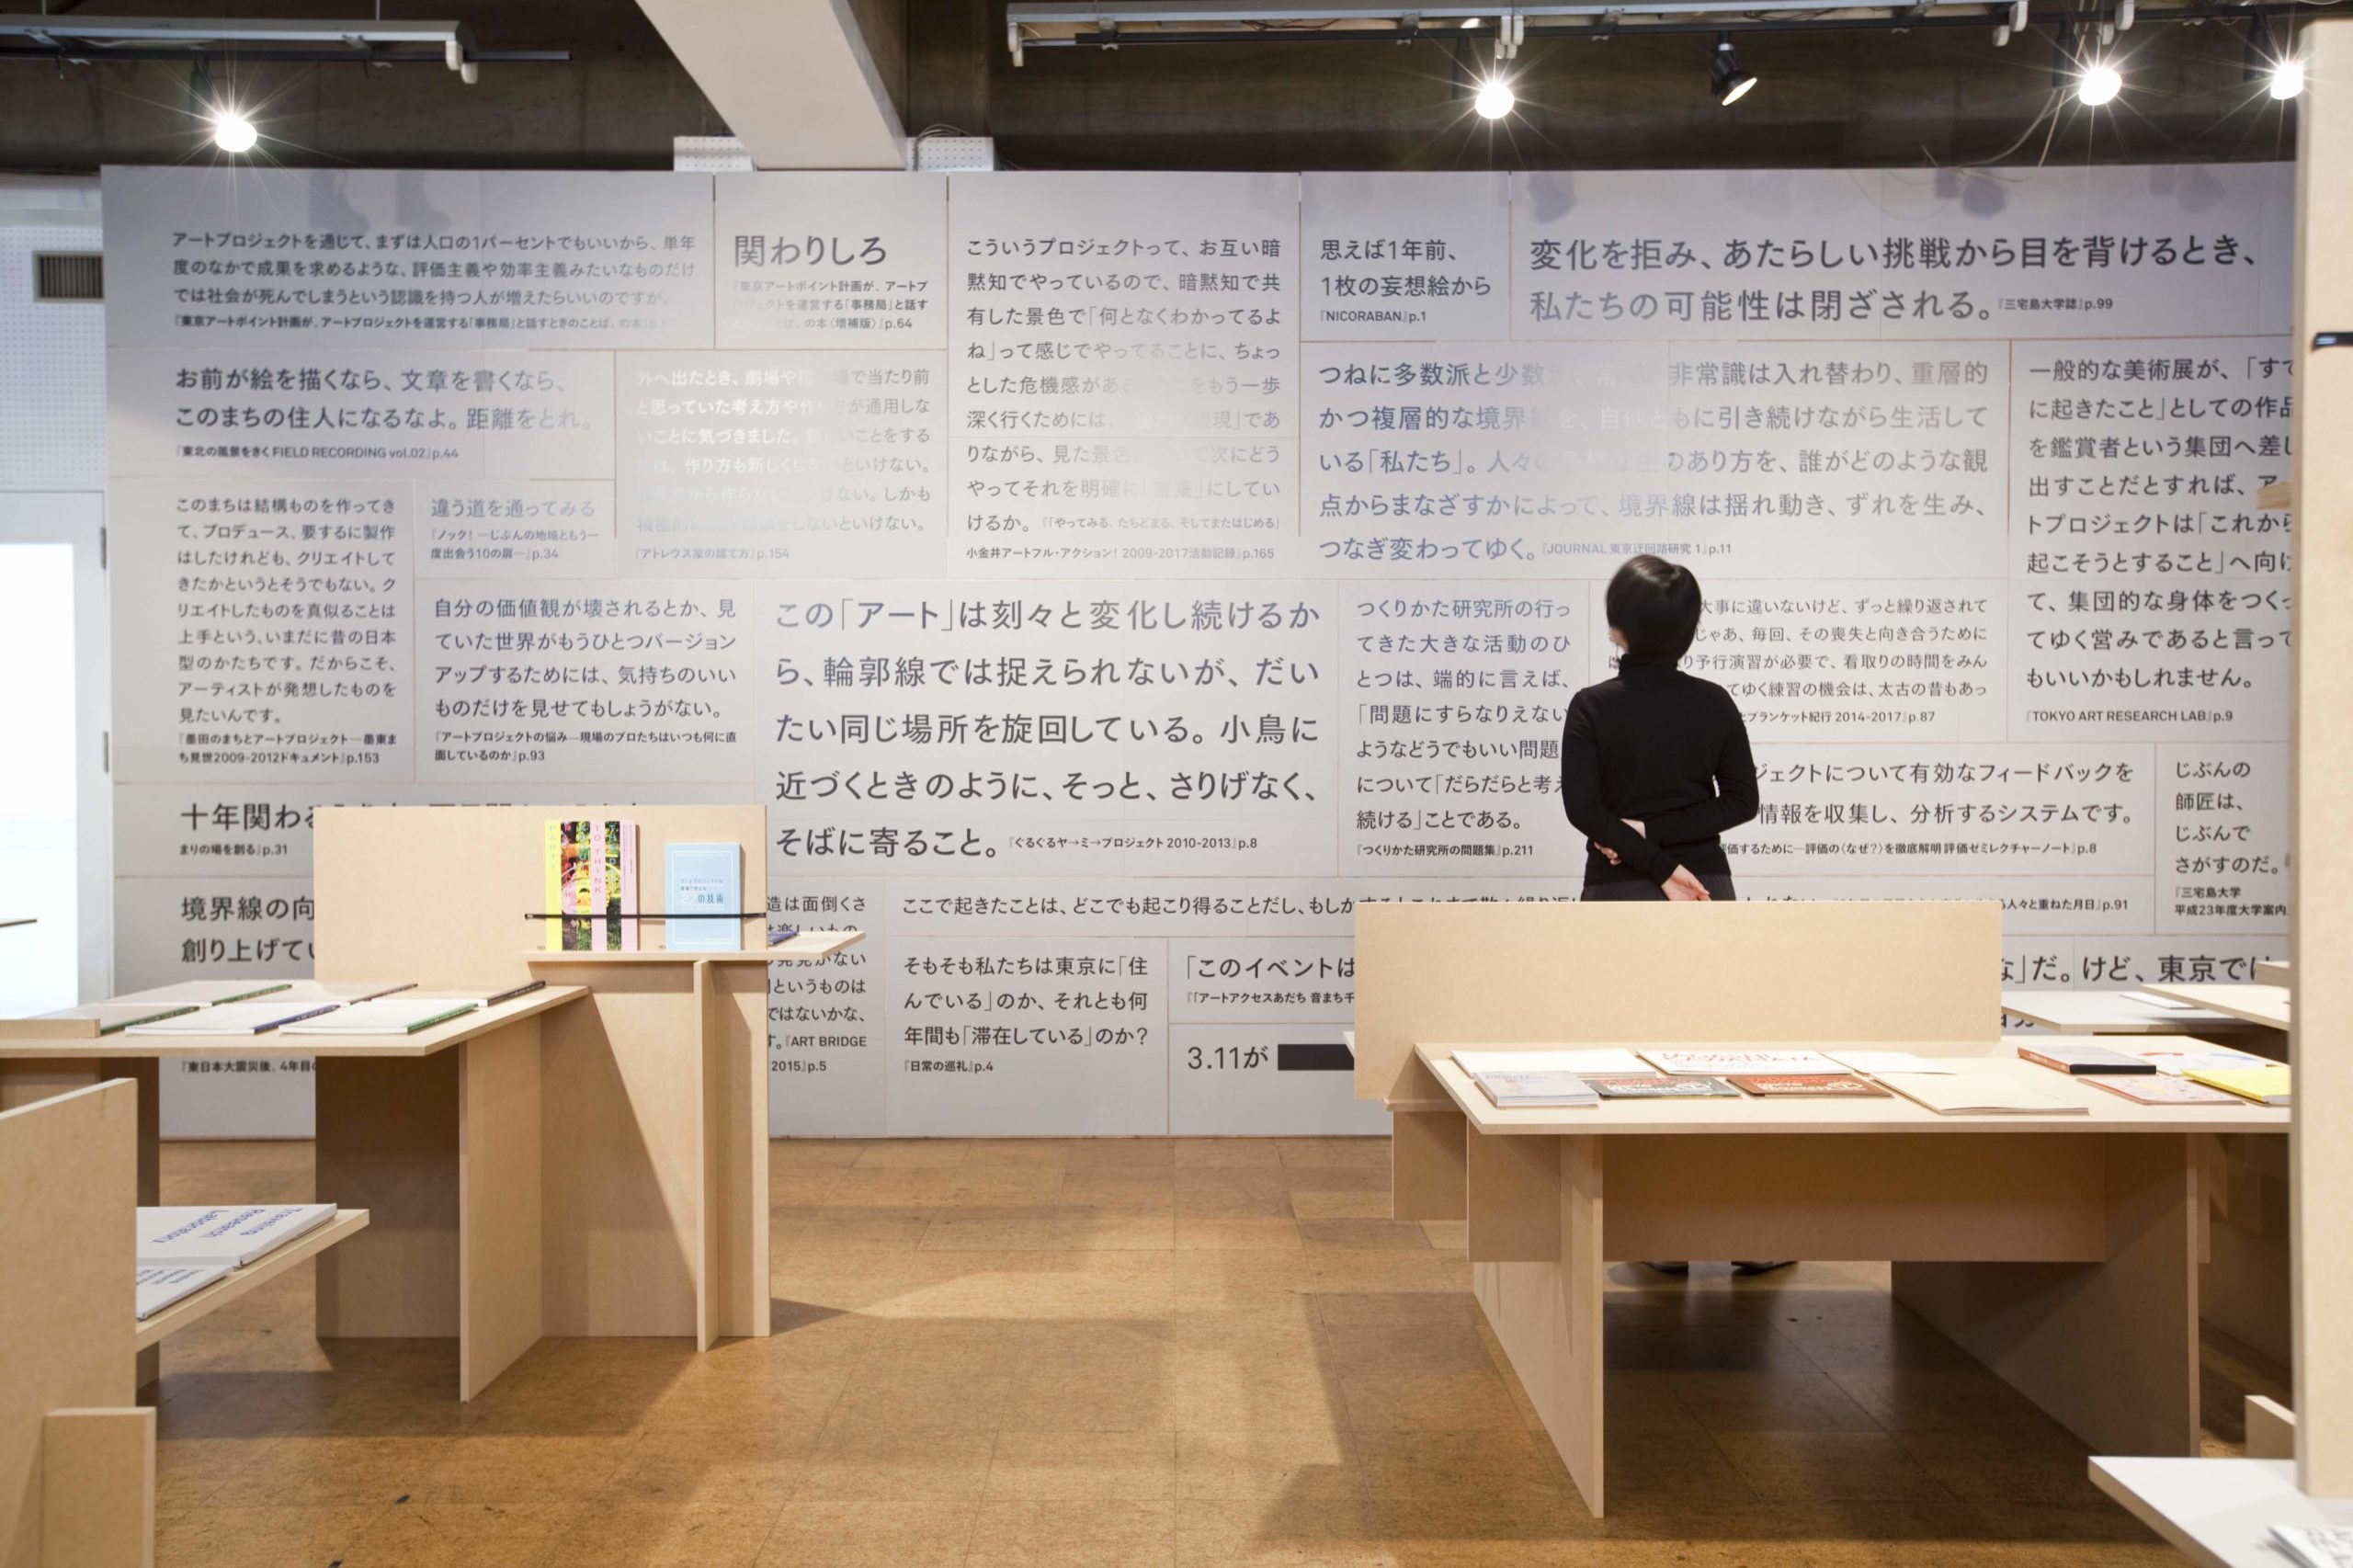 「東京アートポイント計画 ことばと本の展覧会」